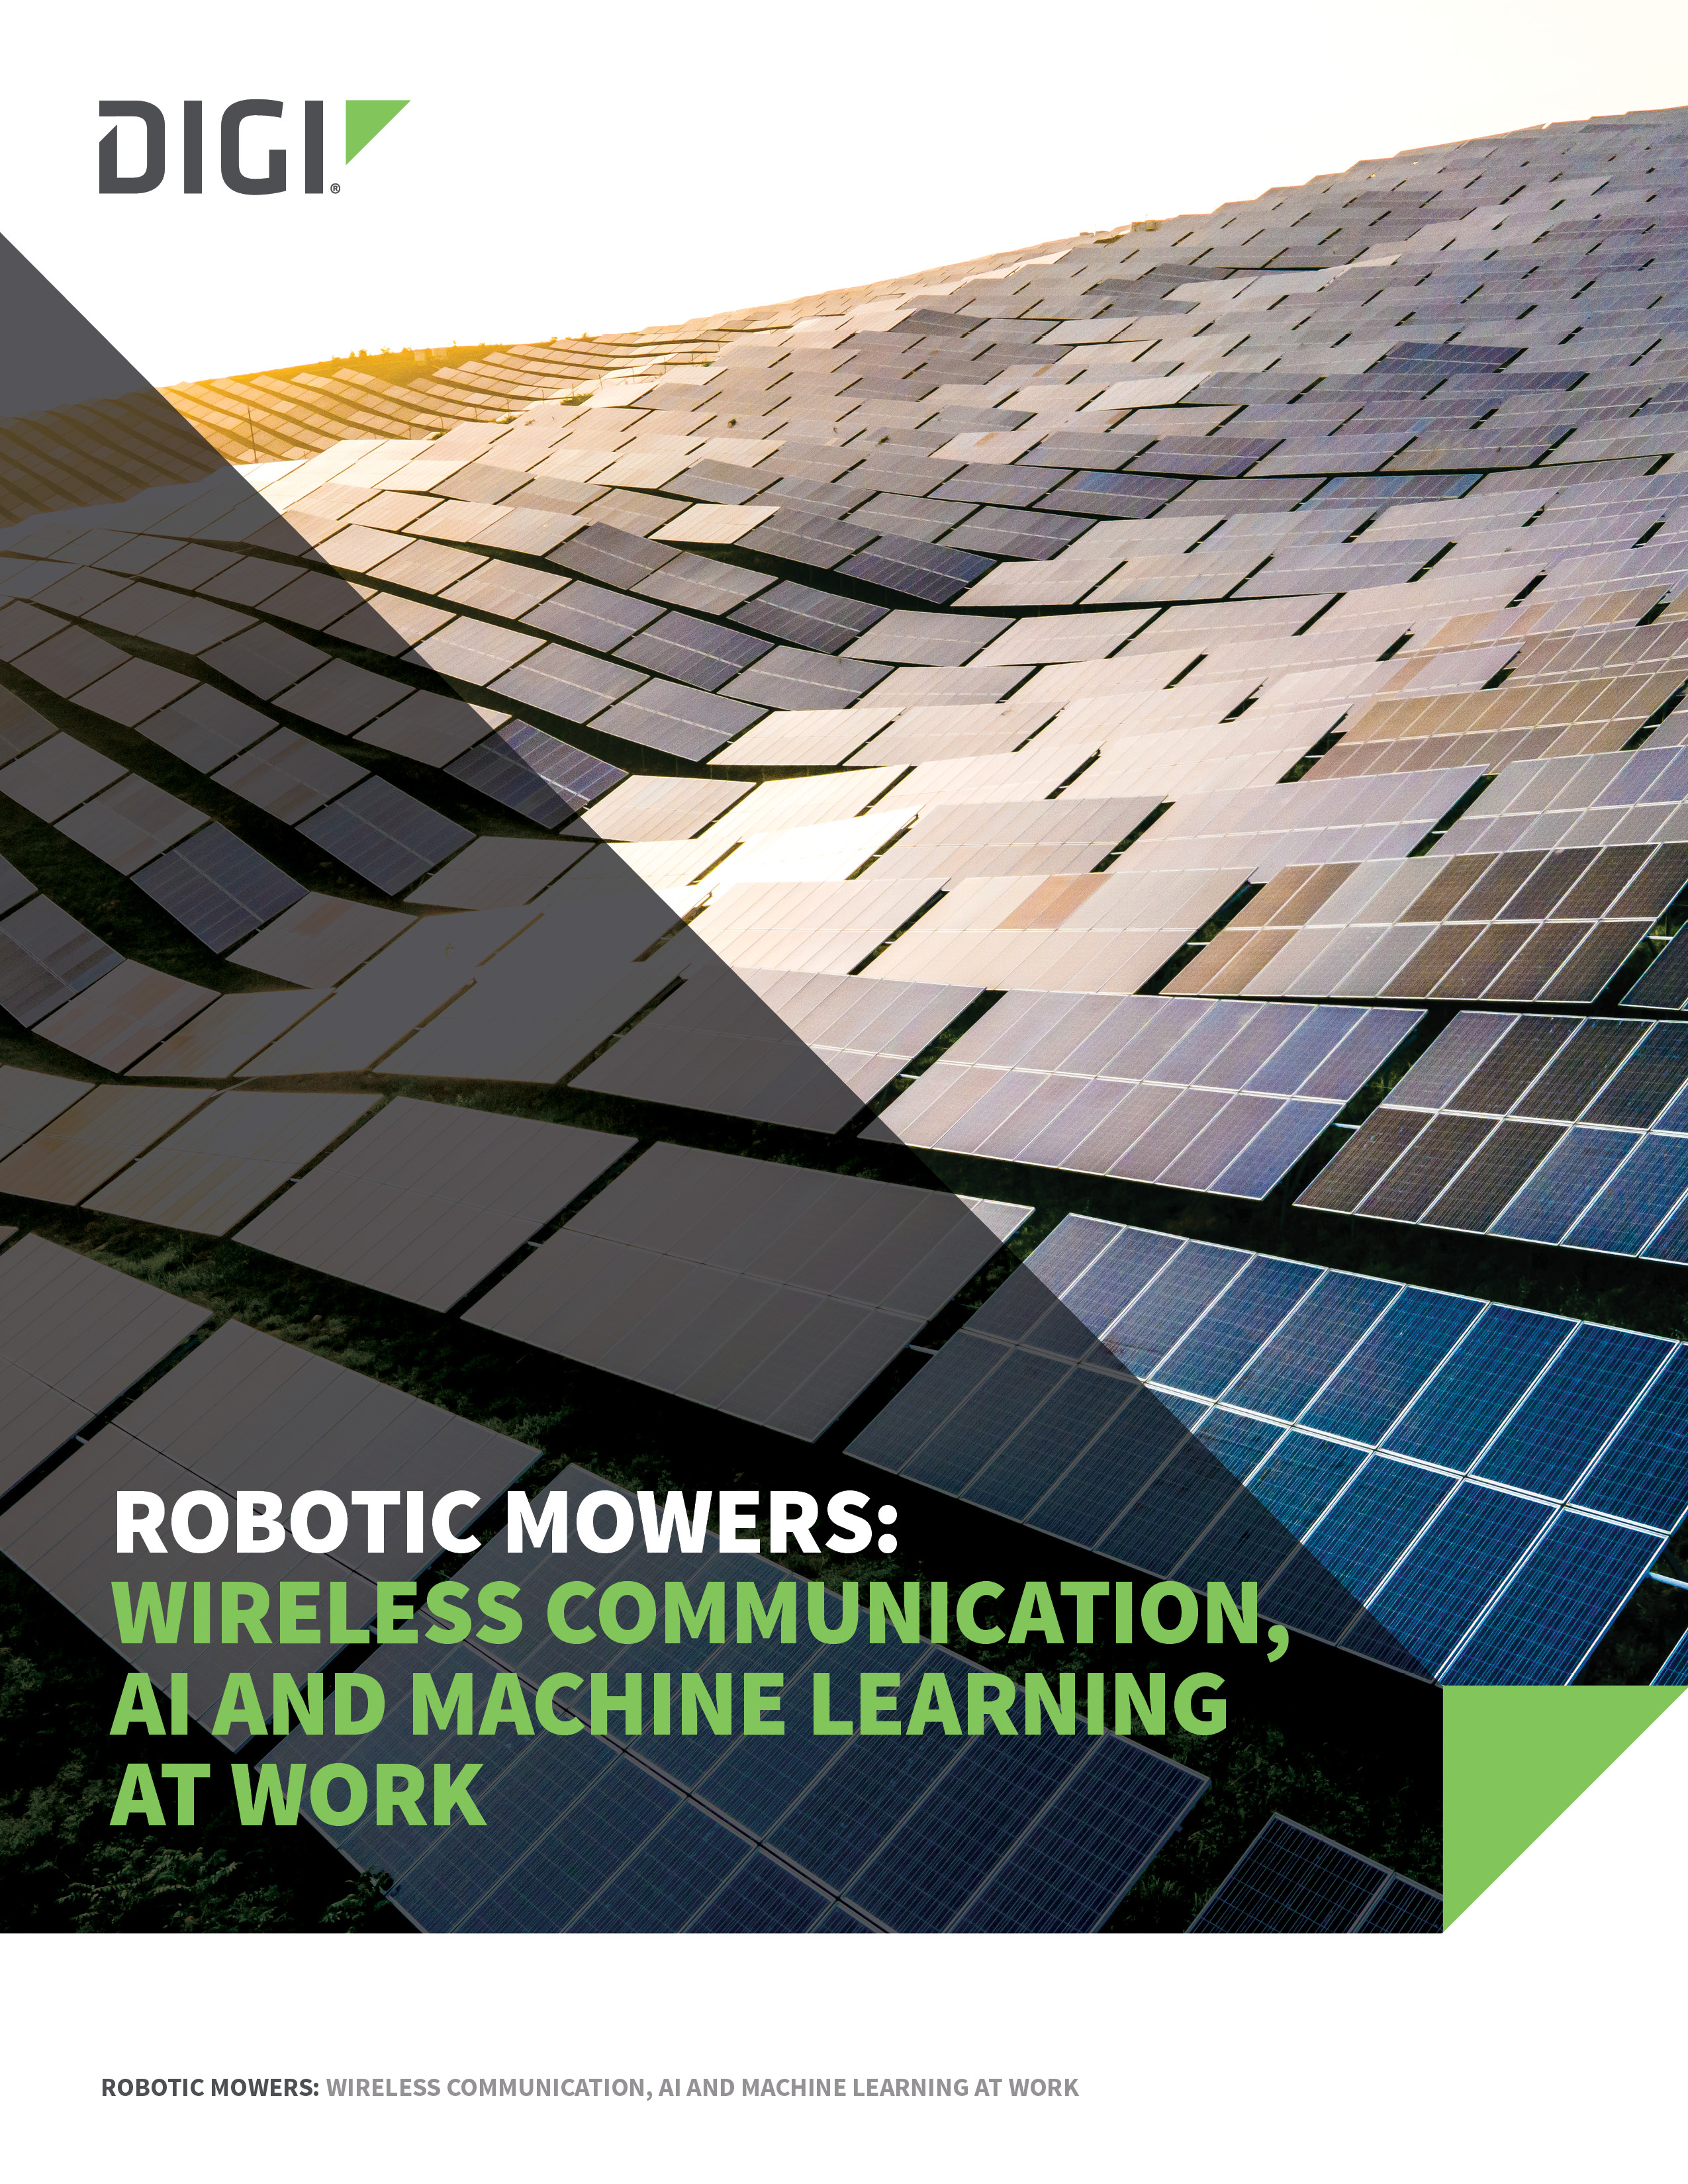 Robots cortacésped: Comunicación inalámbrica, IA y aprendizaje automático en el trabajo portada